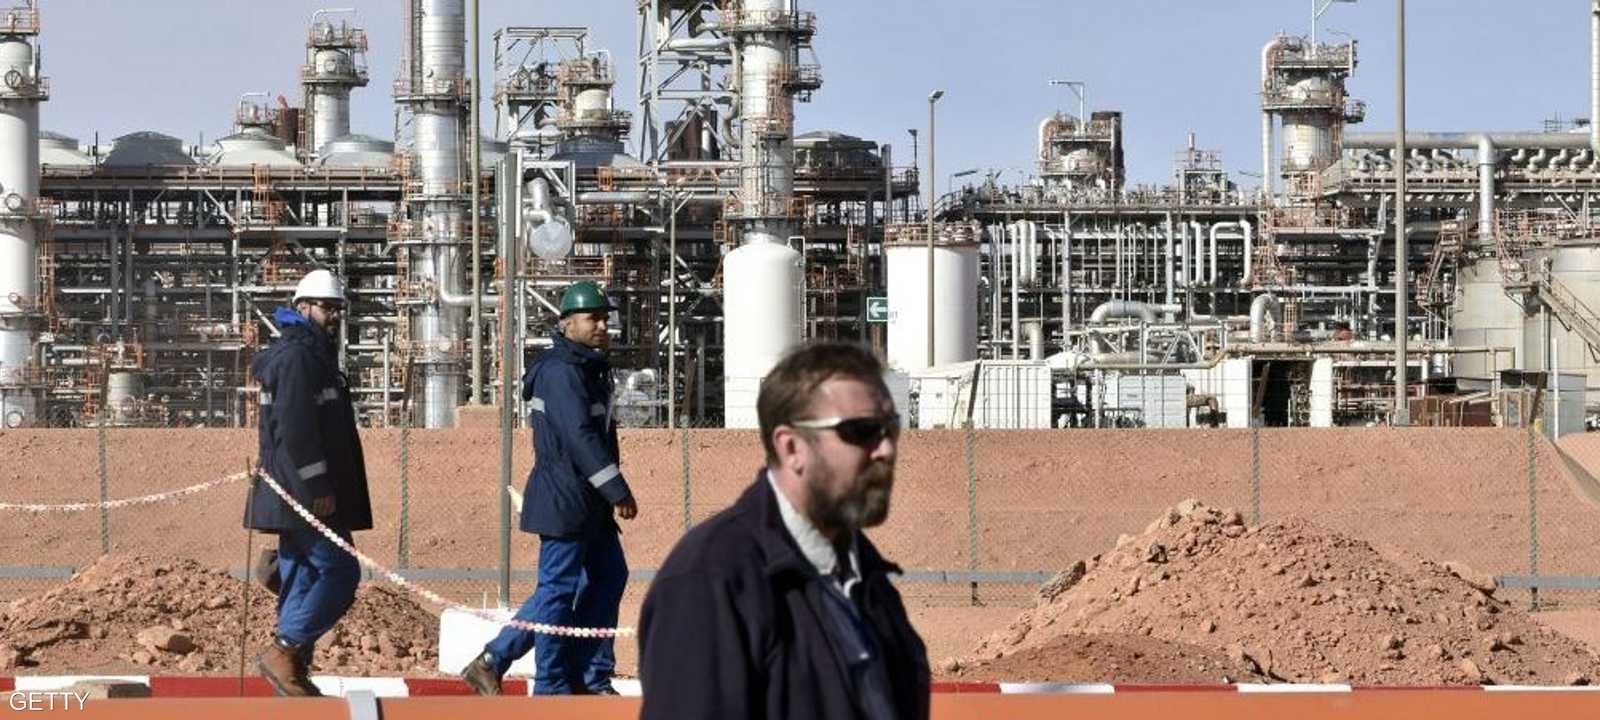 اقتصاد الجزائر يعتمد بشدة على تصدير النفط والغاز